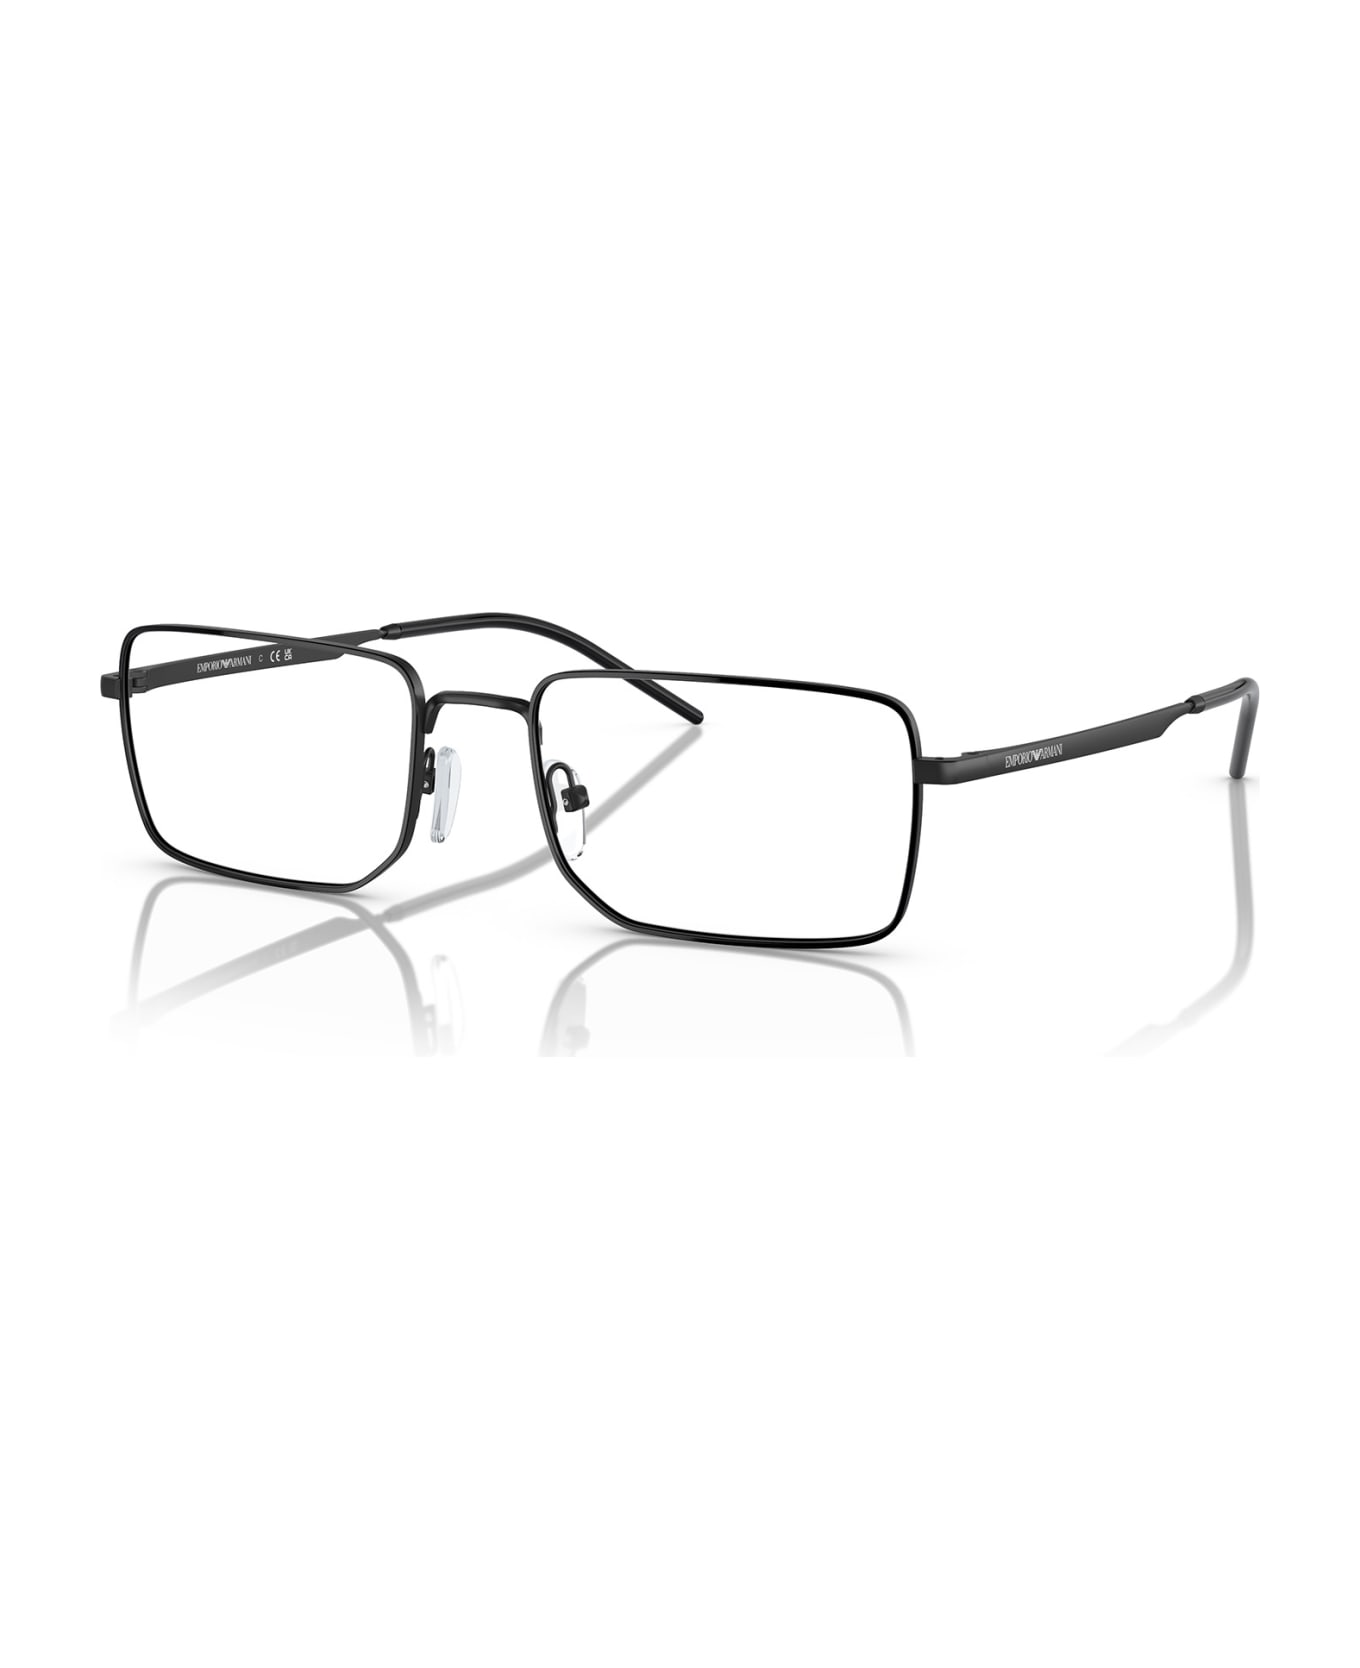 Emporio Armani Ea1153 Matte Black Glasses - Matte Black